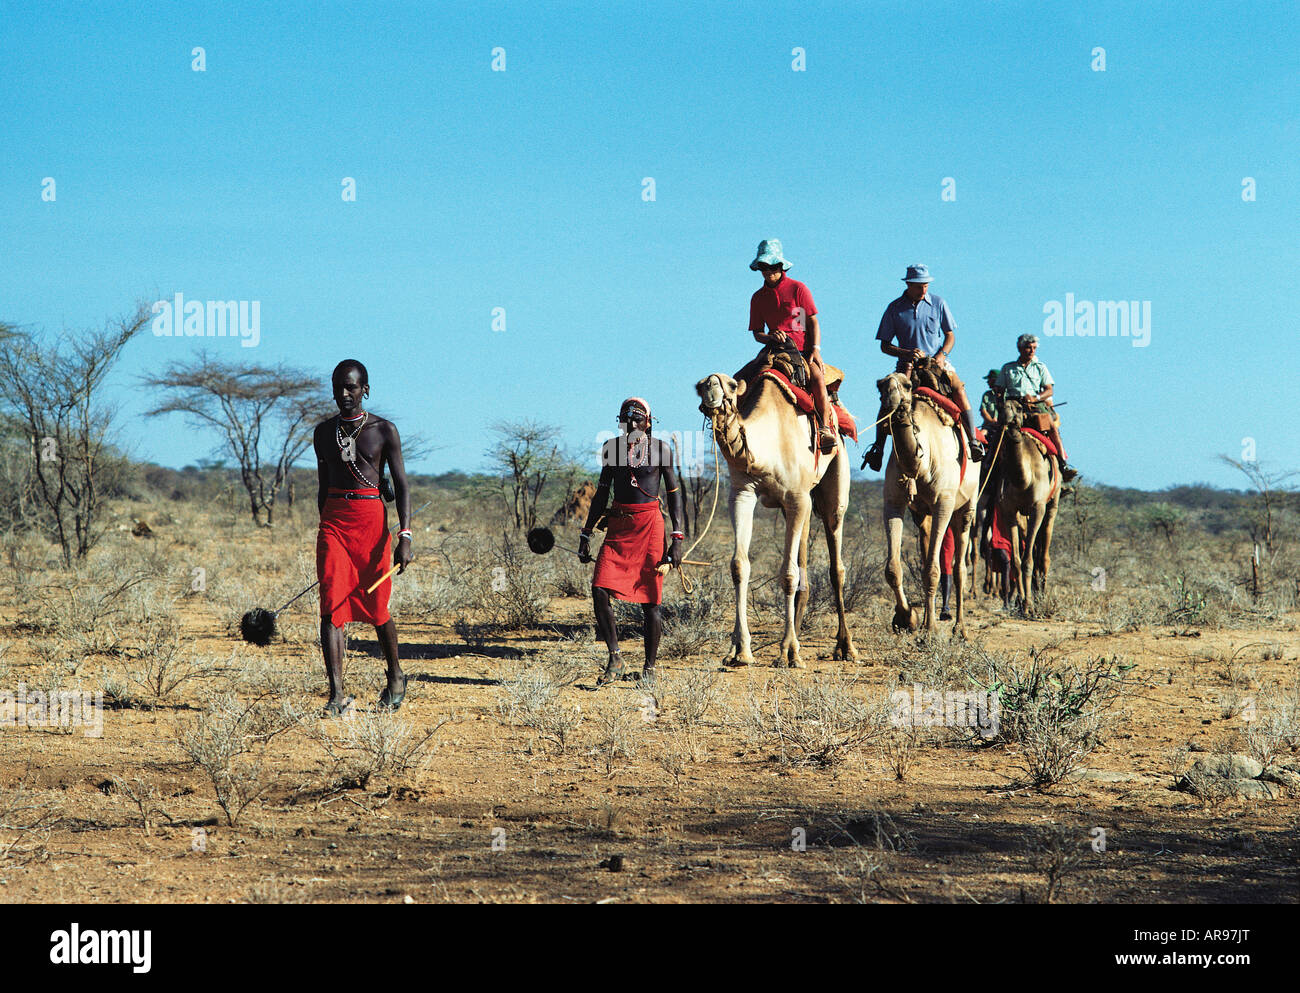 Quatre clients Caucasiens blancs avec leurs guides Samburu sur une randonnée chamelière safari dans le nord du Kenya Afrique de l'Est Banque D'Images